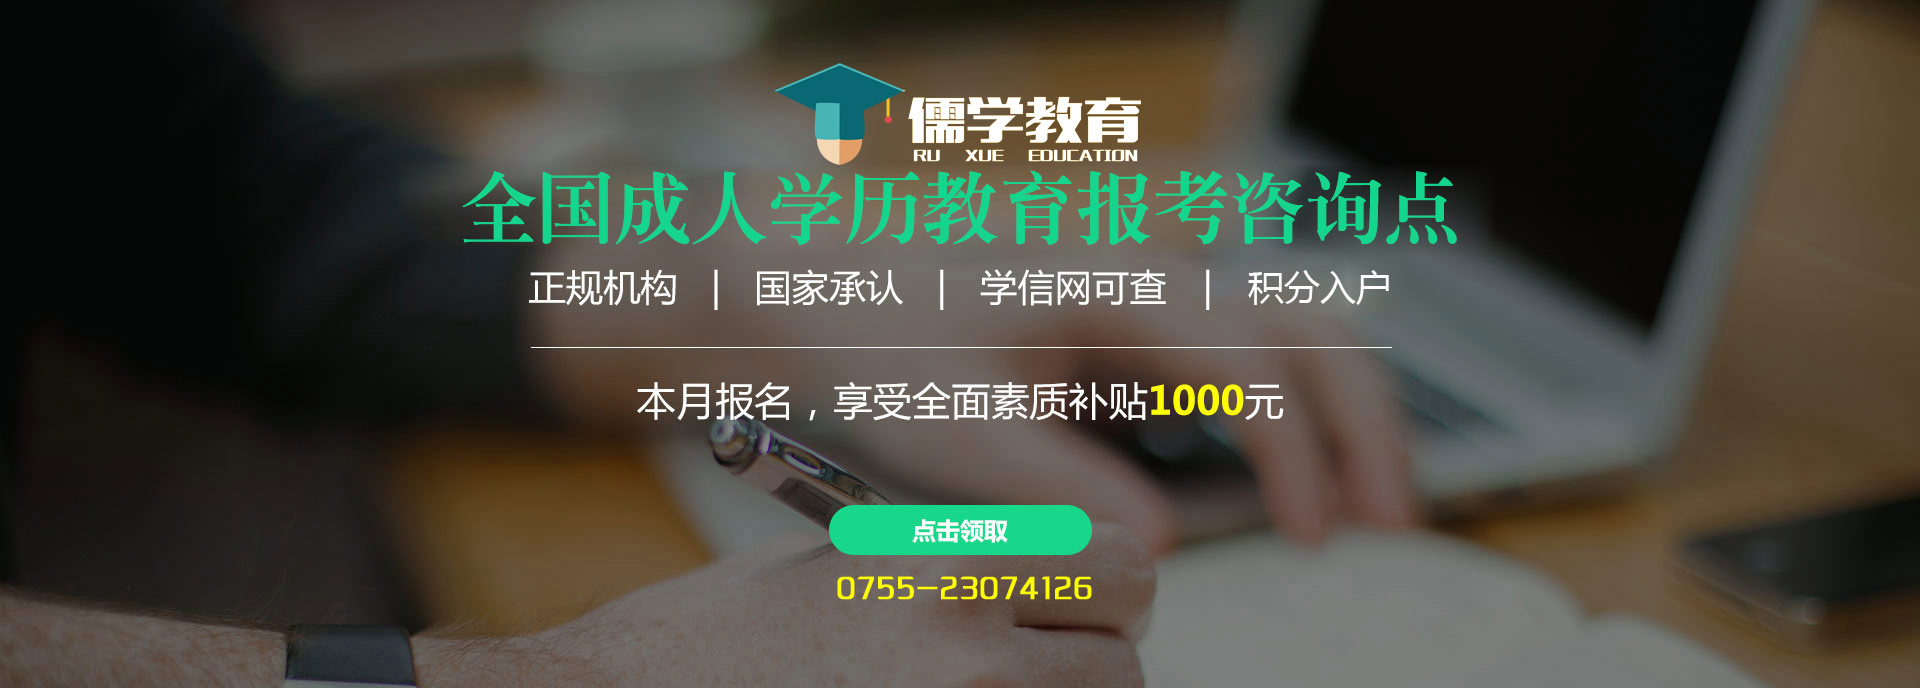 深圳学历提升排名前十的报名中心,欢迎在线咨